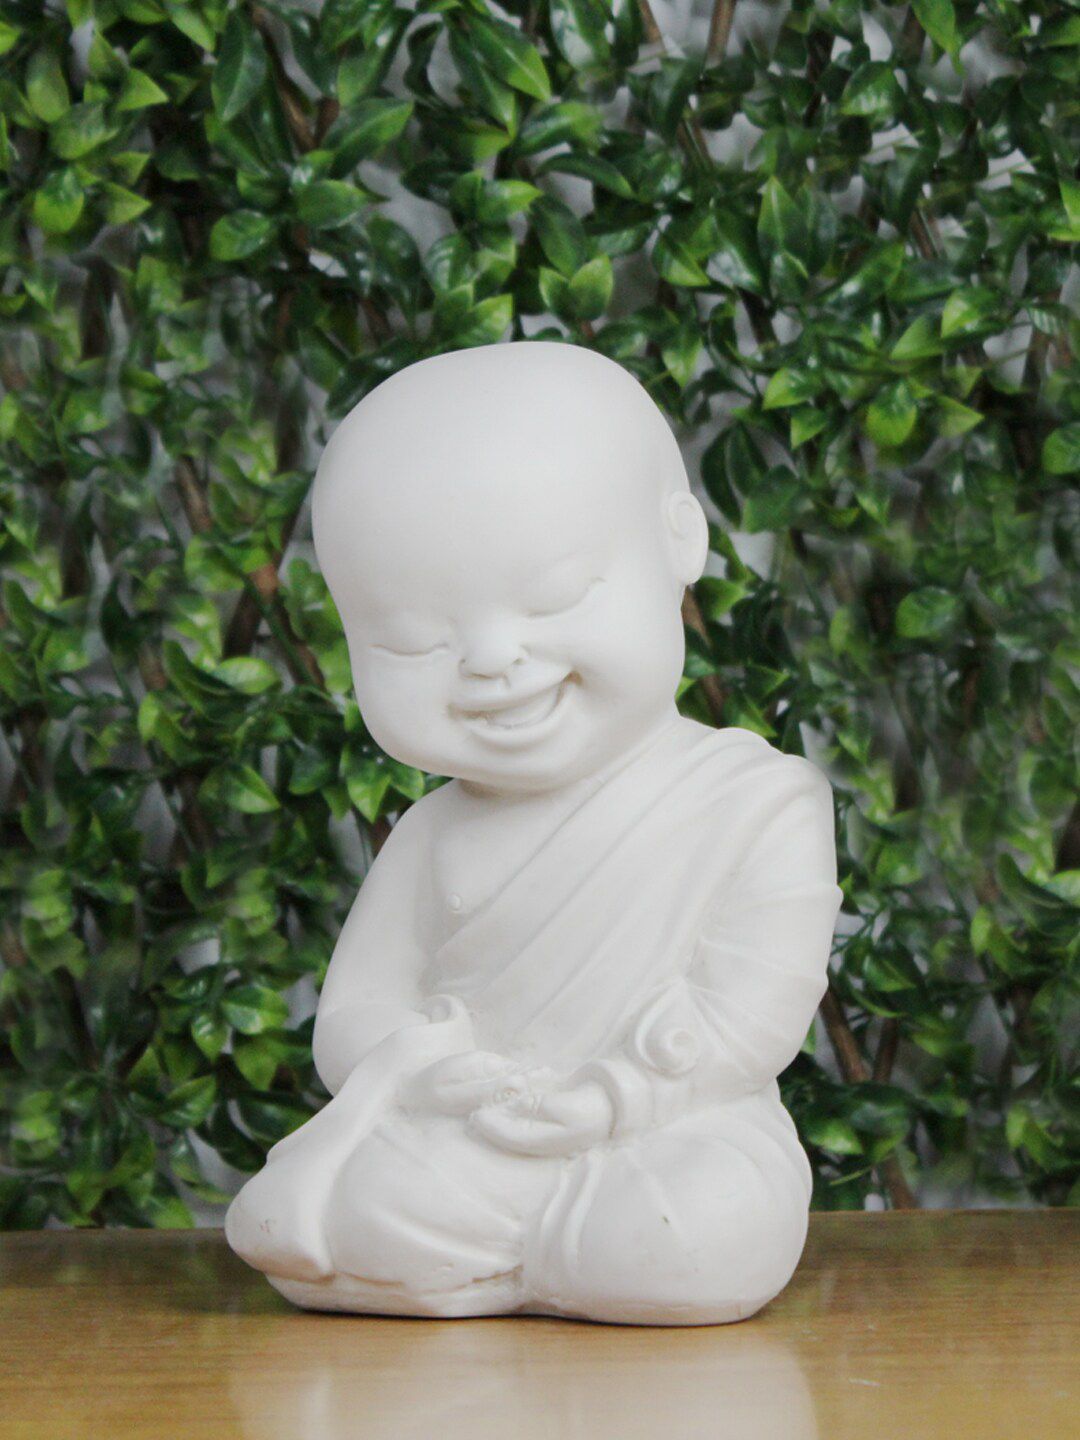 Wonderland White Baby Monk Sitting Garden Accessory Price in India